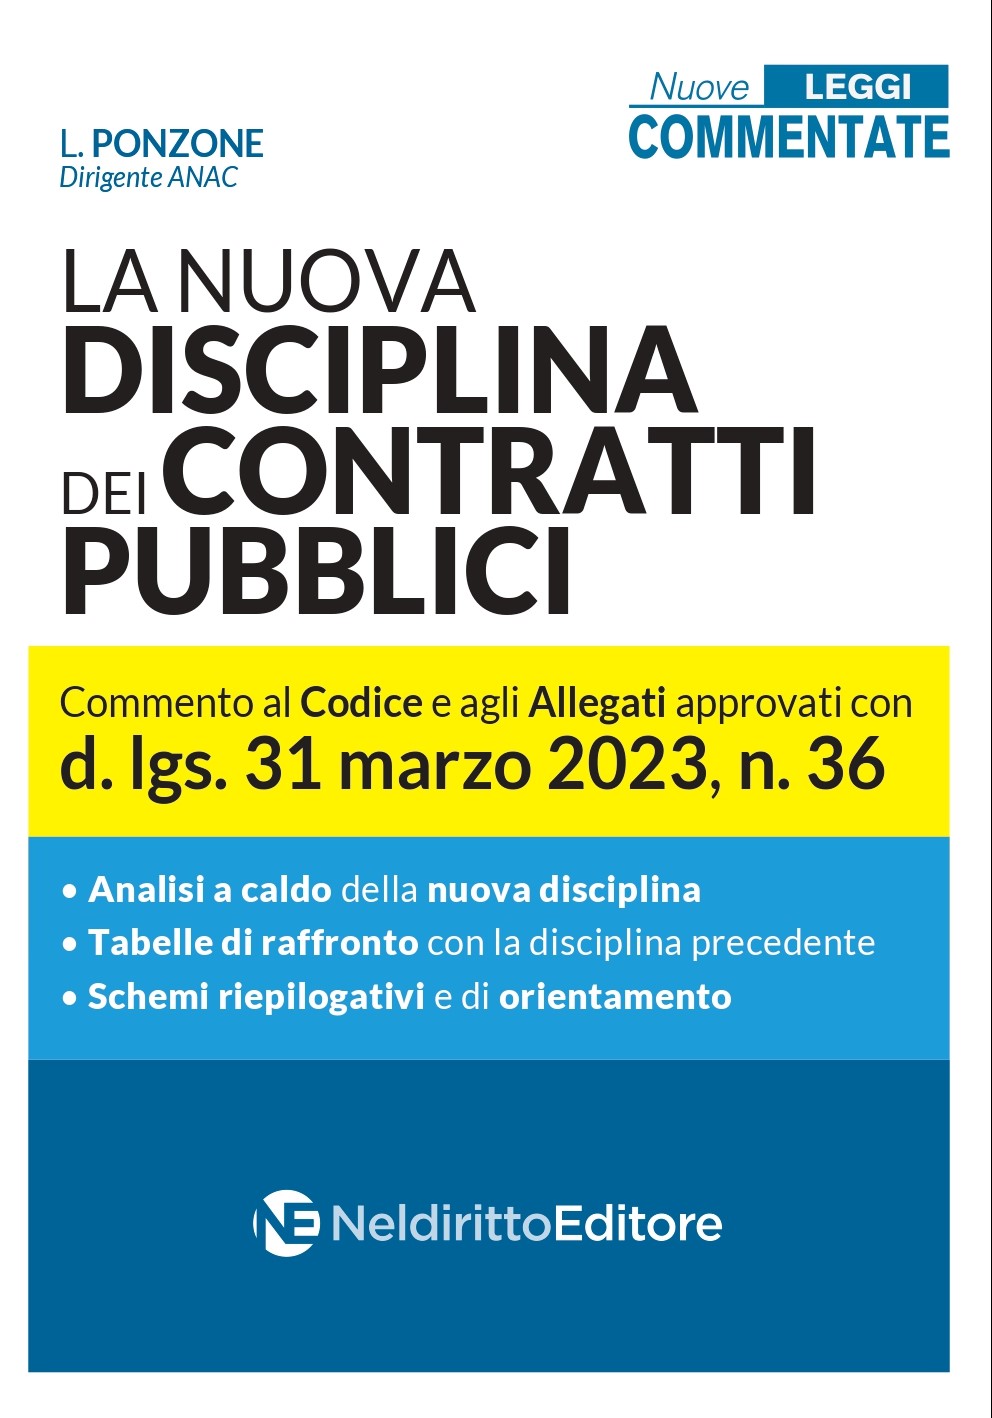 La nuova disciplina dei contratti pubblici. Commento al Codice e agli Allegati approvati con d.lgs. 31 marzo 2023, n.36 